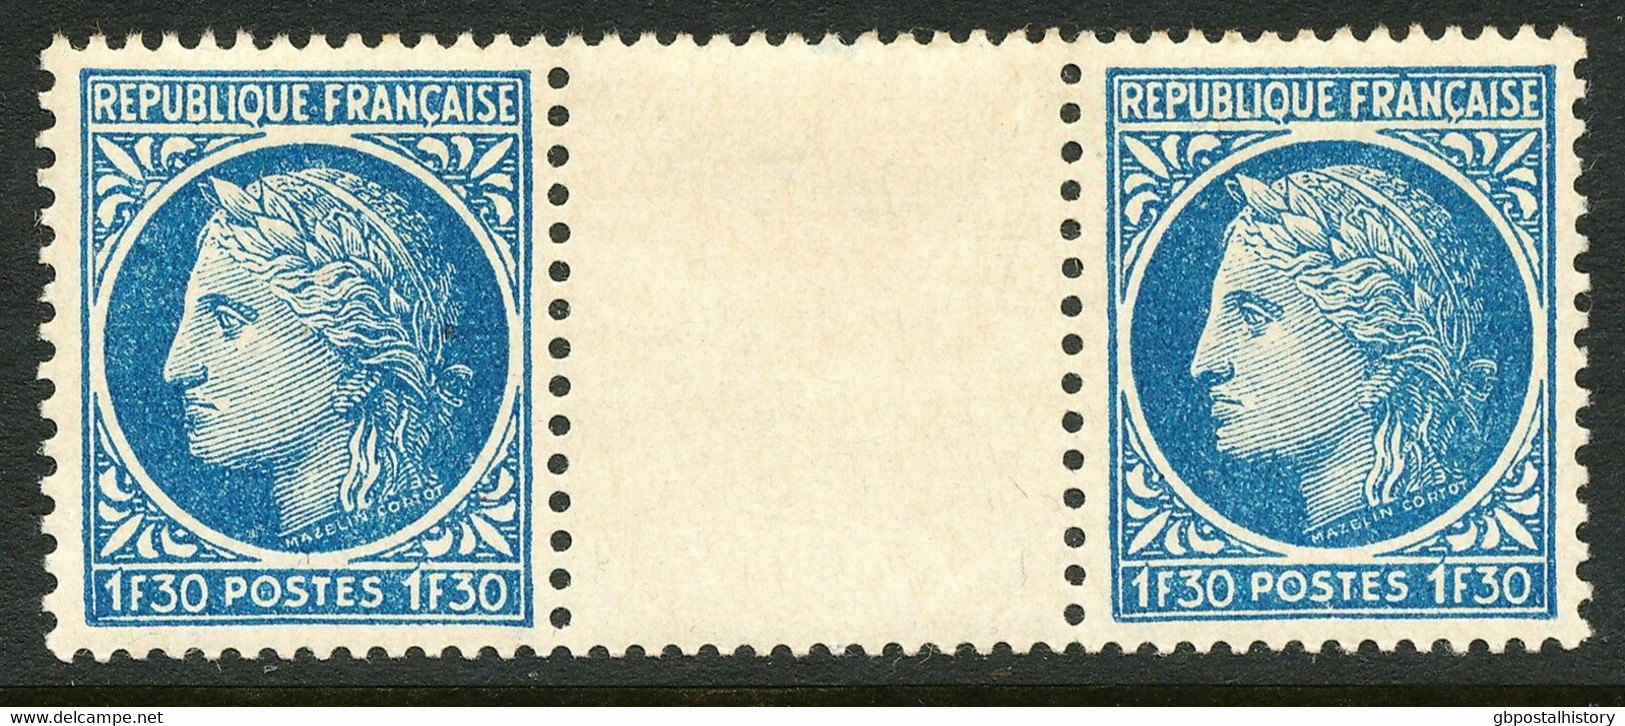 FRANKREICH 1947 Ceres (Type Mazelin) 1.30Fr. ABART Postfrisches Zwischenstegpaar - Nuevos